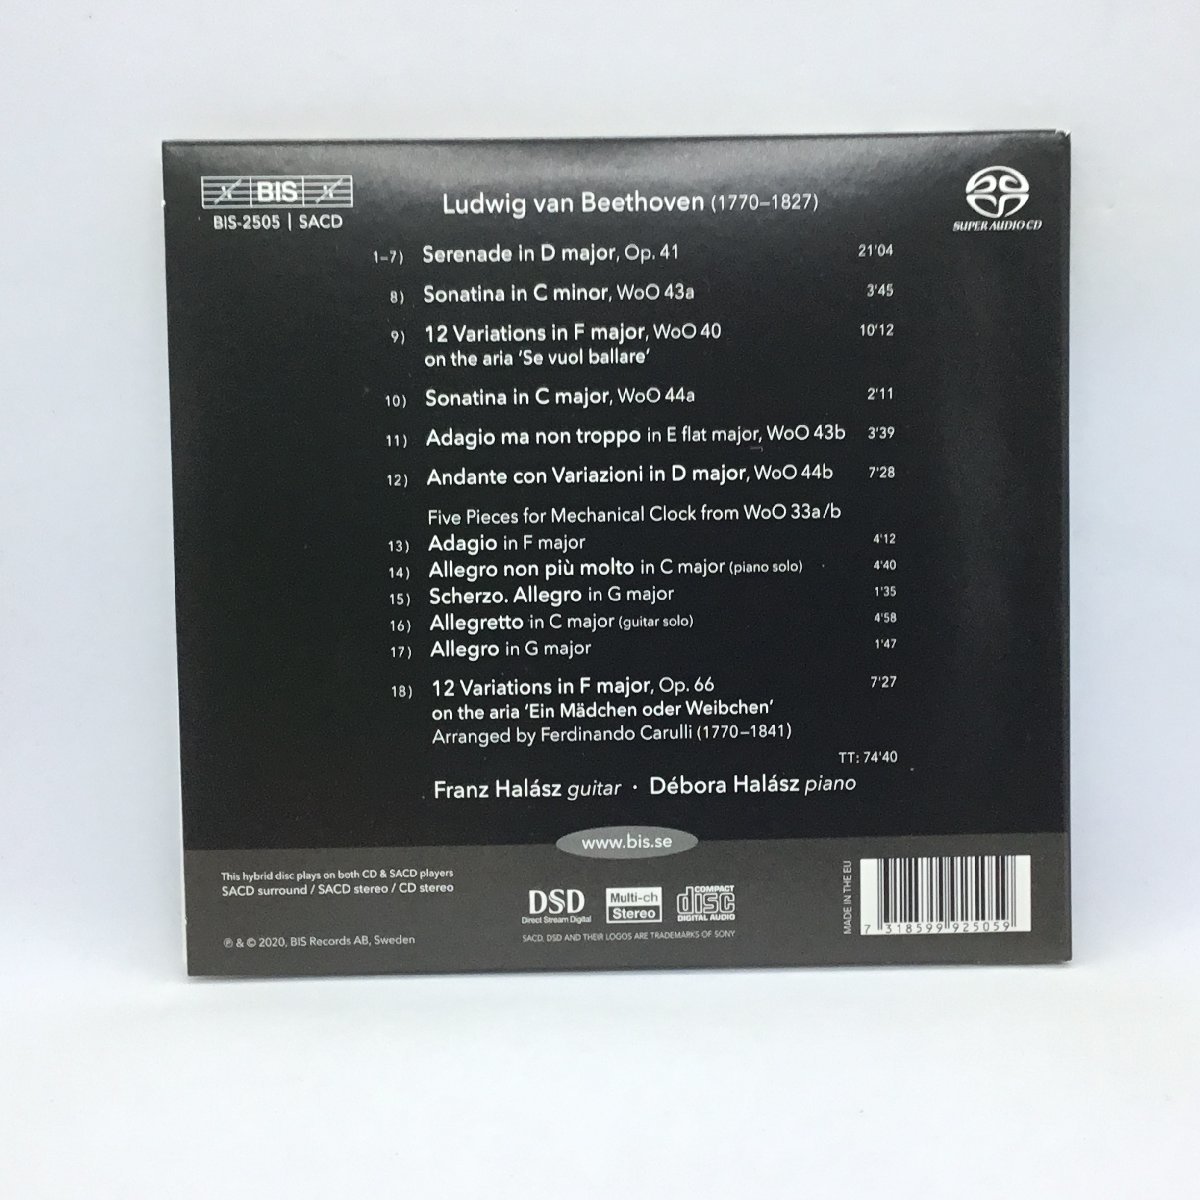 SACDハイブリッド ◇ フランツ・ハラース、デボラ・ハラース / ベートーヴェン: ギターとピアノのための作品集 (CD) BIS-2505_画像2